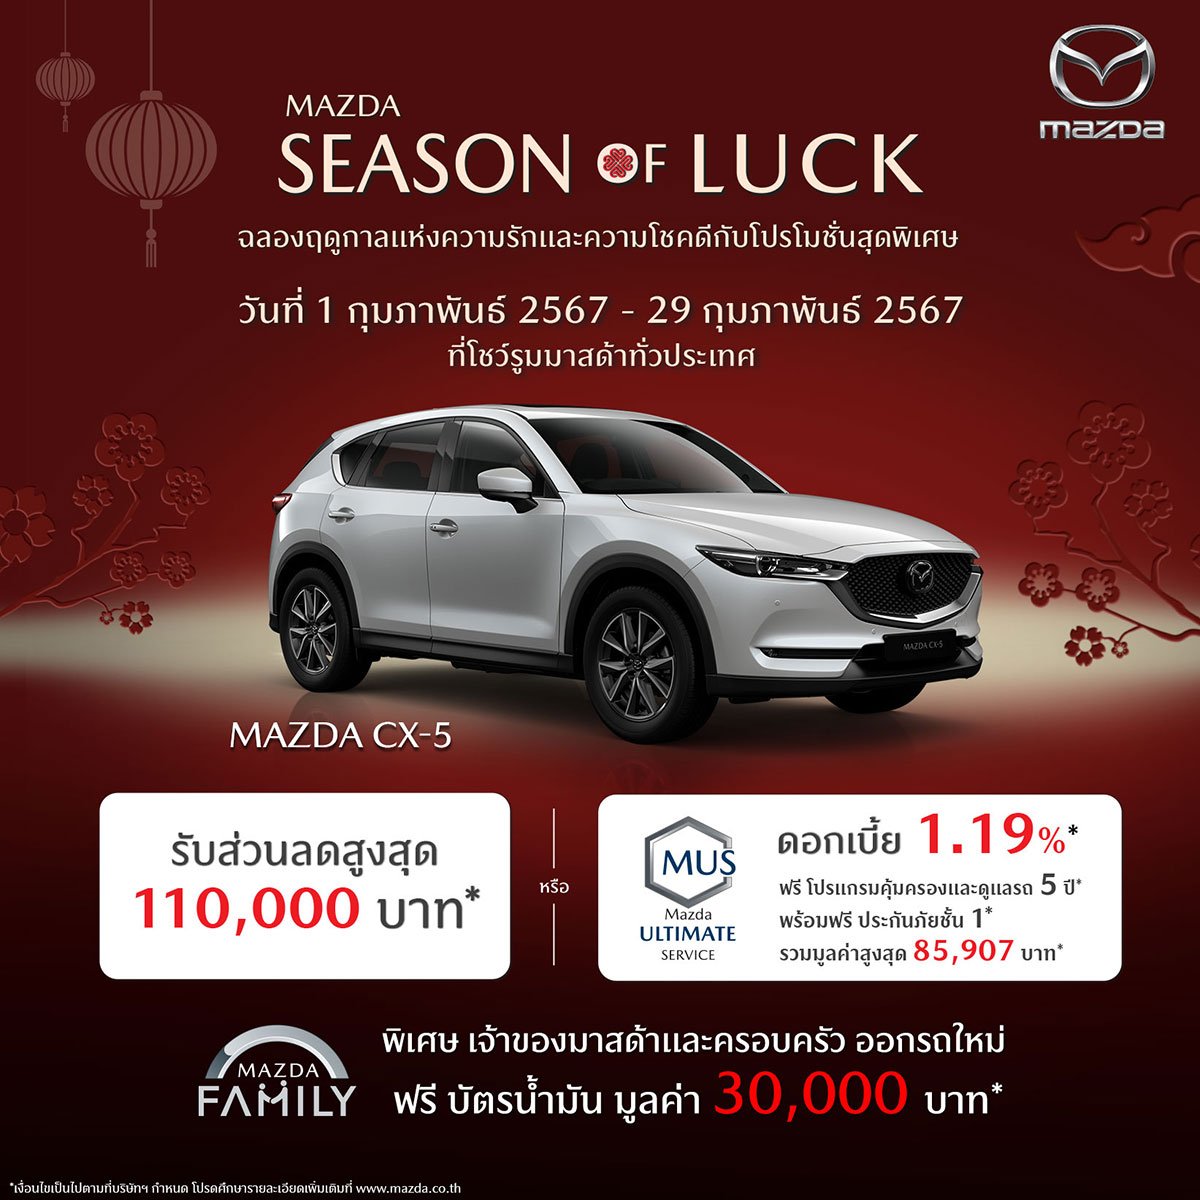 Mazda cx-5 โปรโมชัน Mazda Season of Luck